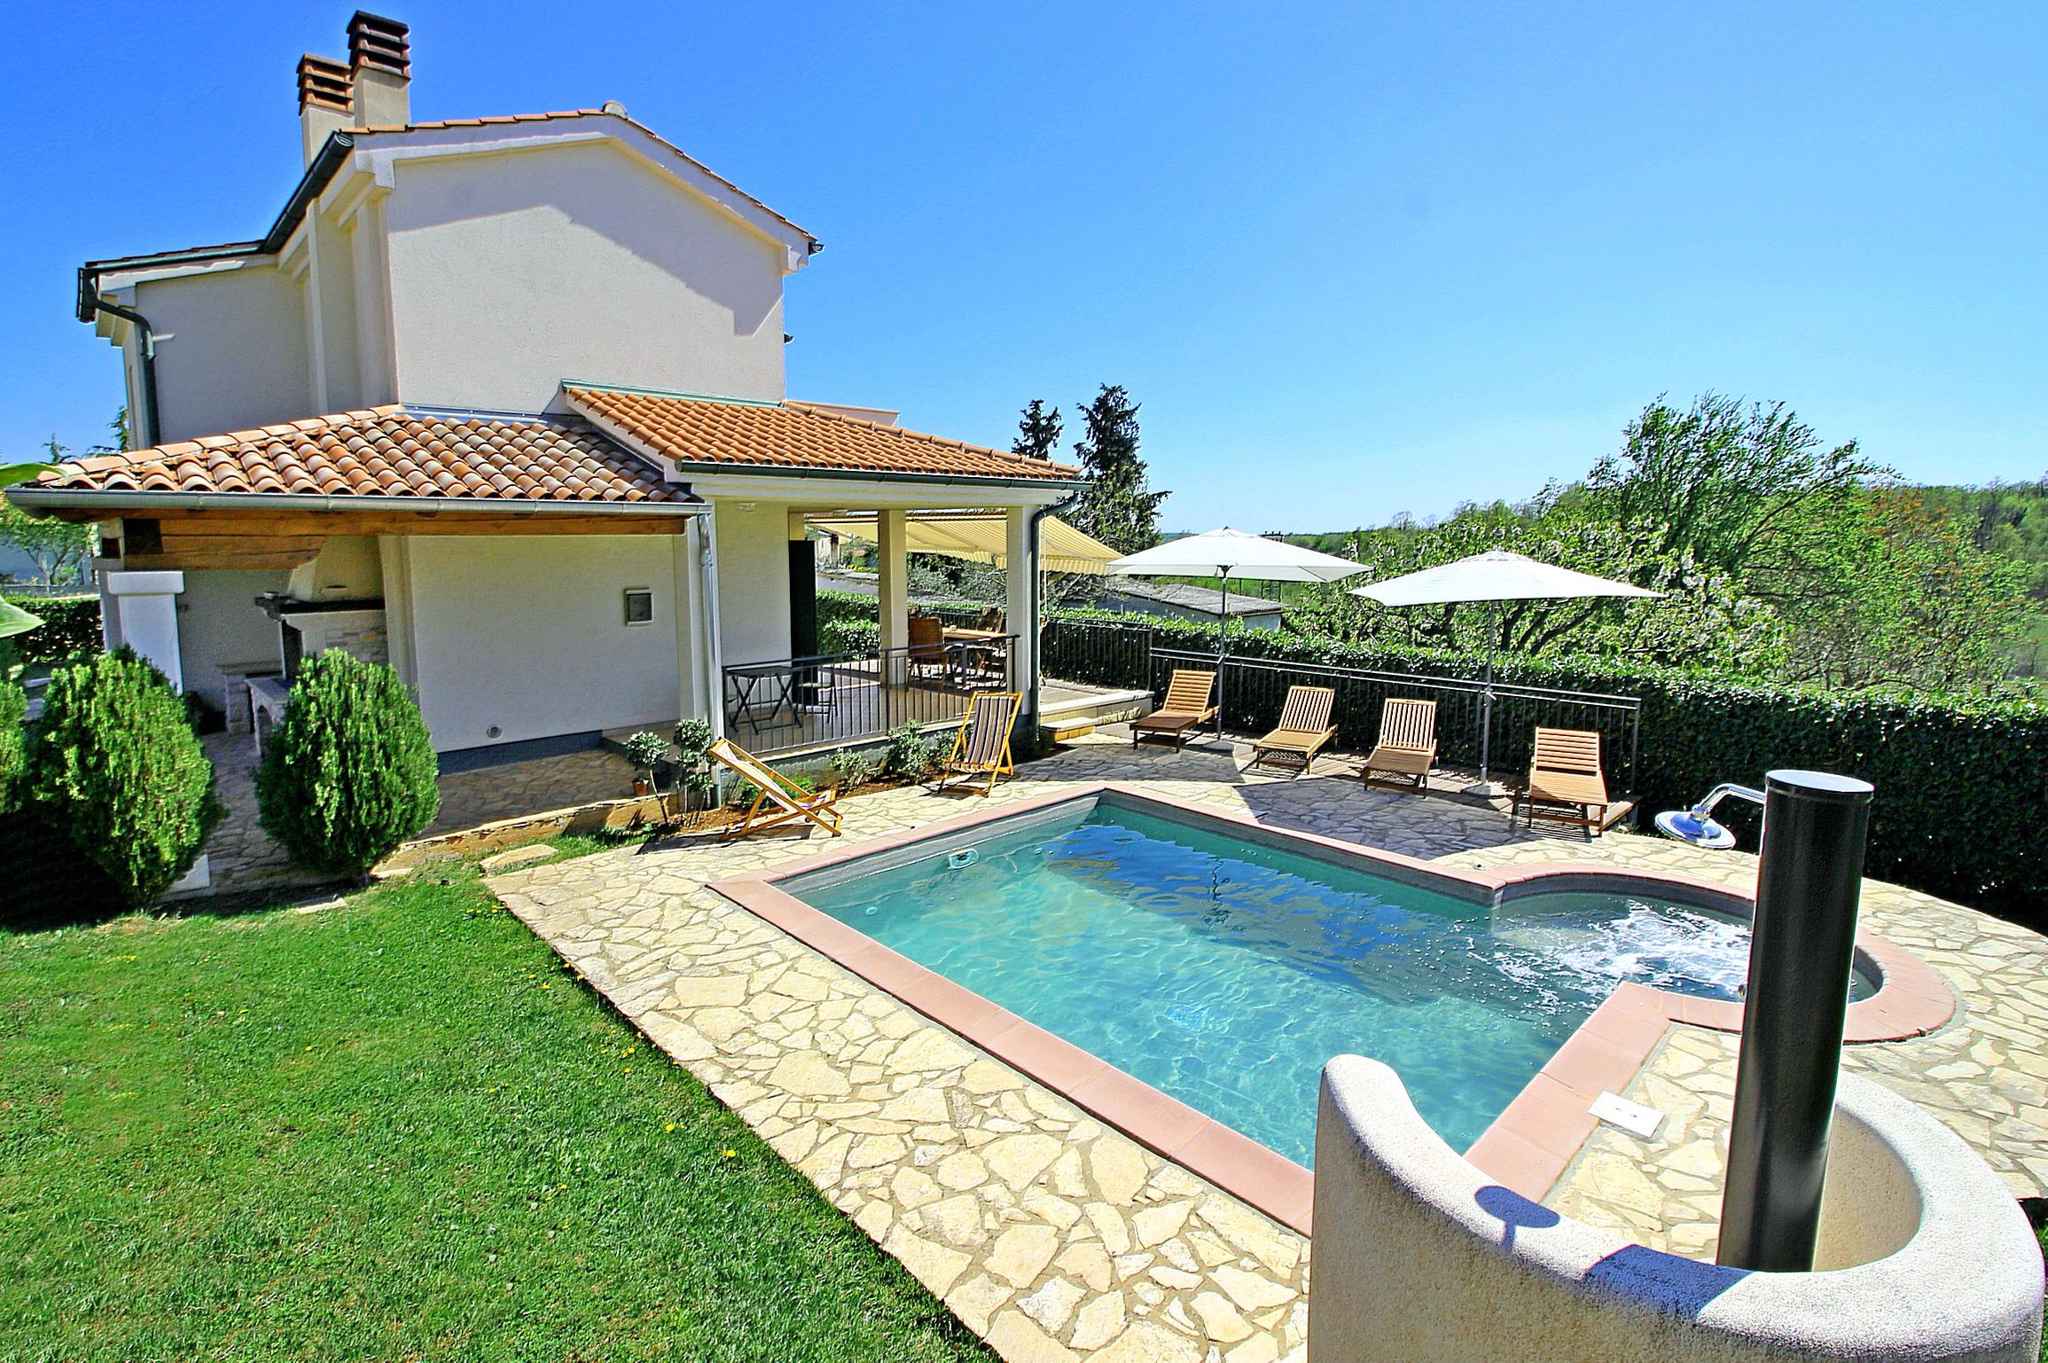 Villa mit Pool, Jacuzzi und Wellenanlage Ferienhaus in Kroatien